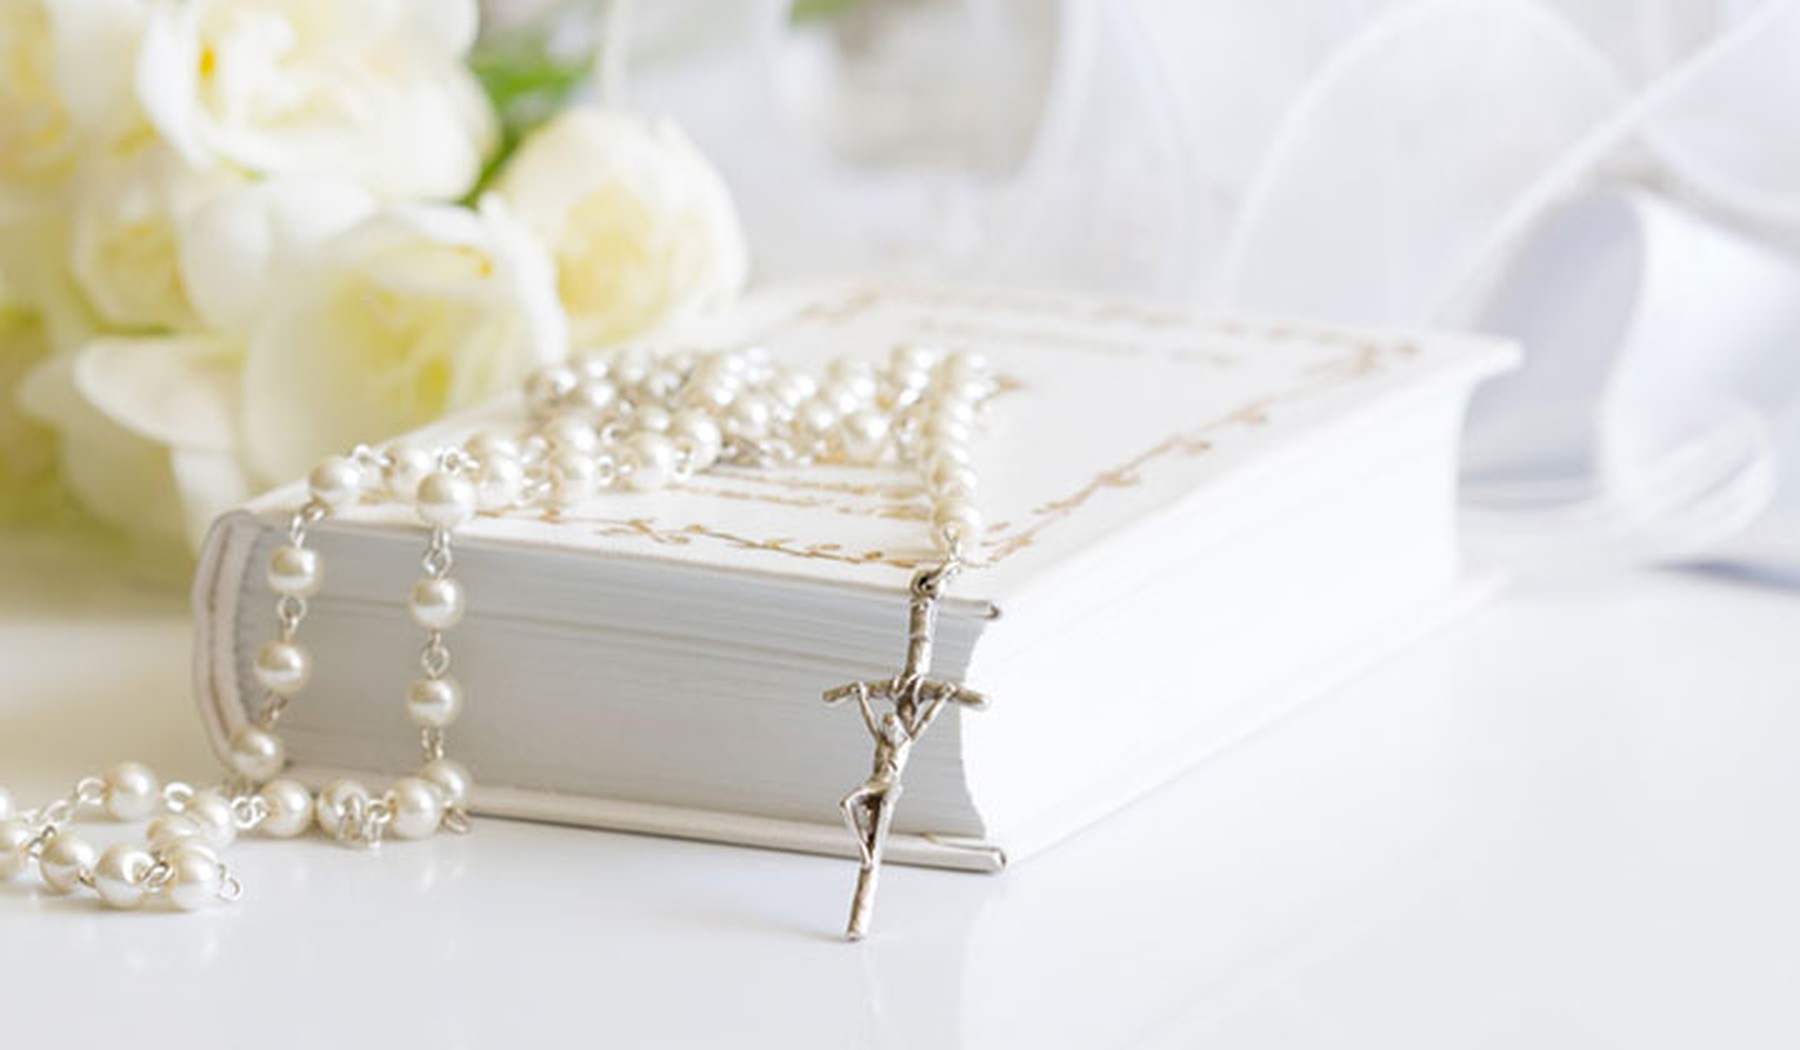 Biblia blanca con un rosario de perlas encima y unas flores blancas de fondo.